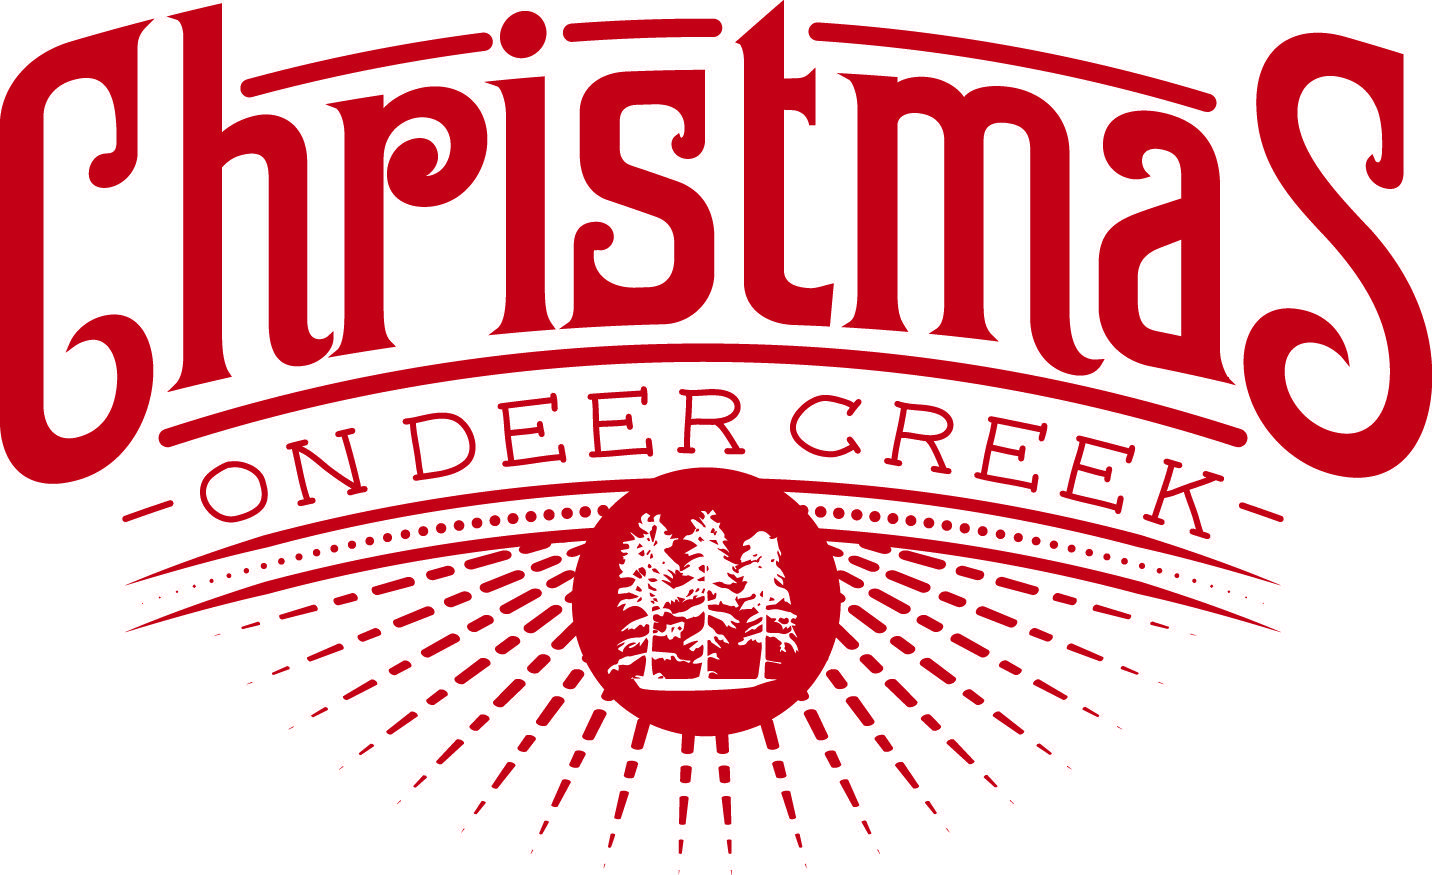 Christmas Logo - Christmas on Deer Creek